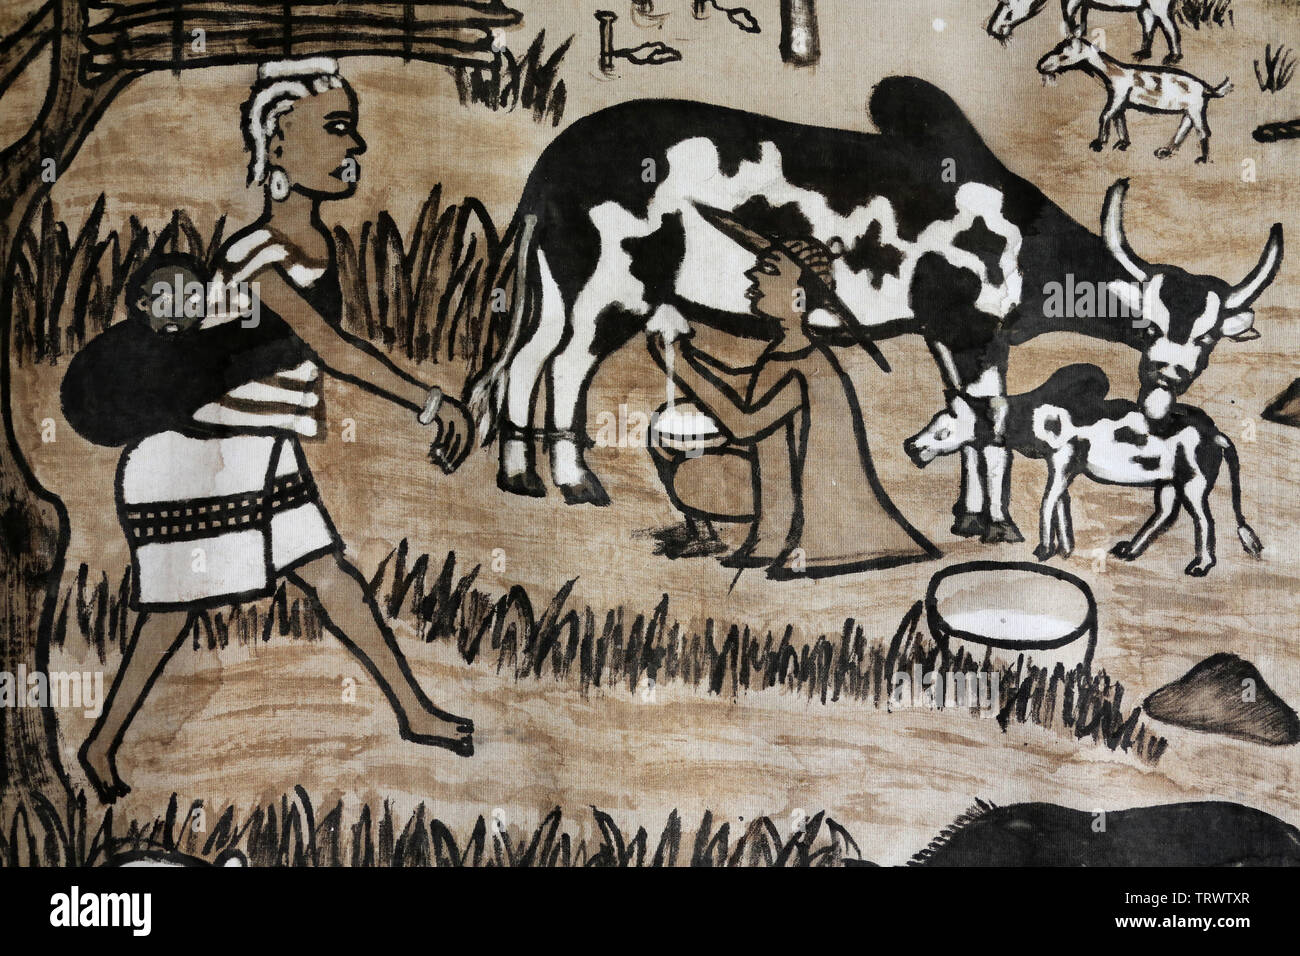 Traite d'une vache. Il Musée International du Golfe de Guinea. La convenzione di Lomé. Il Togo. Afrique de l'Ouest. Foto Stock